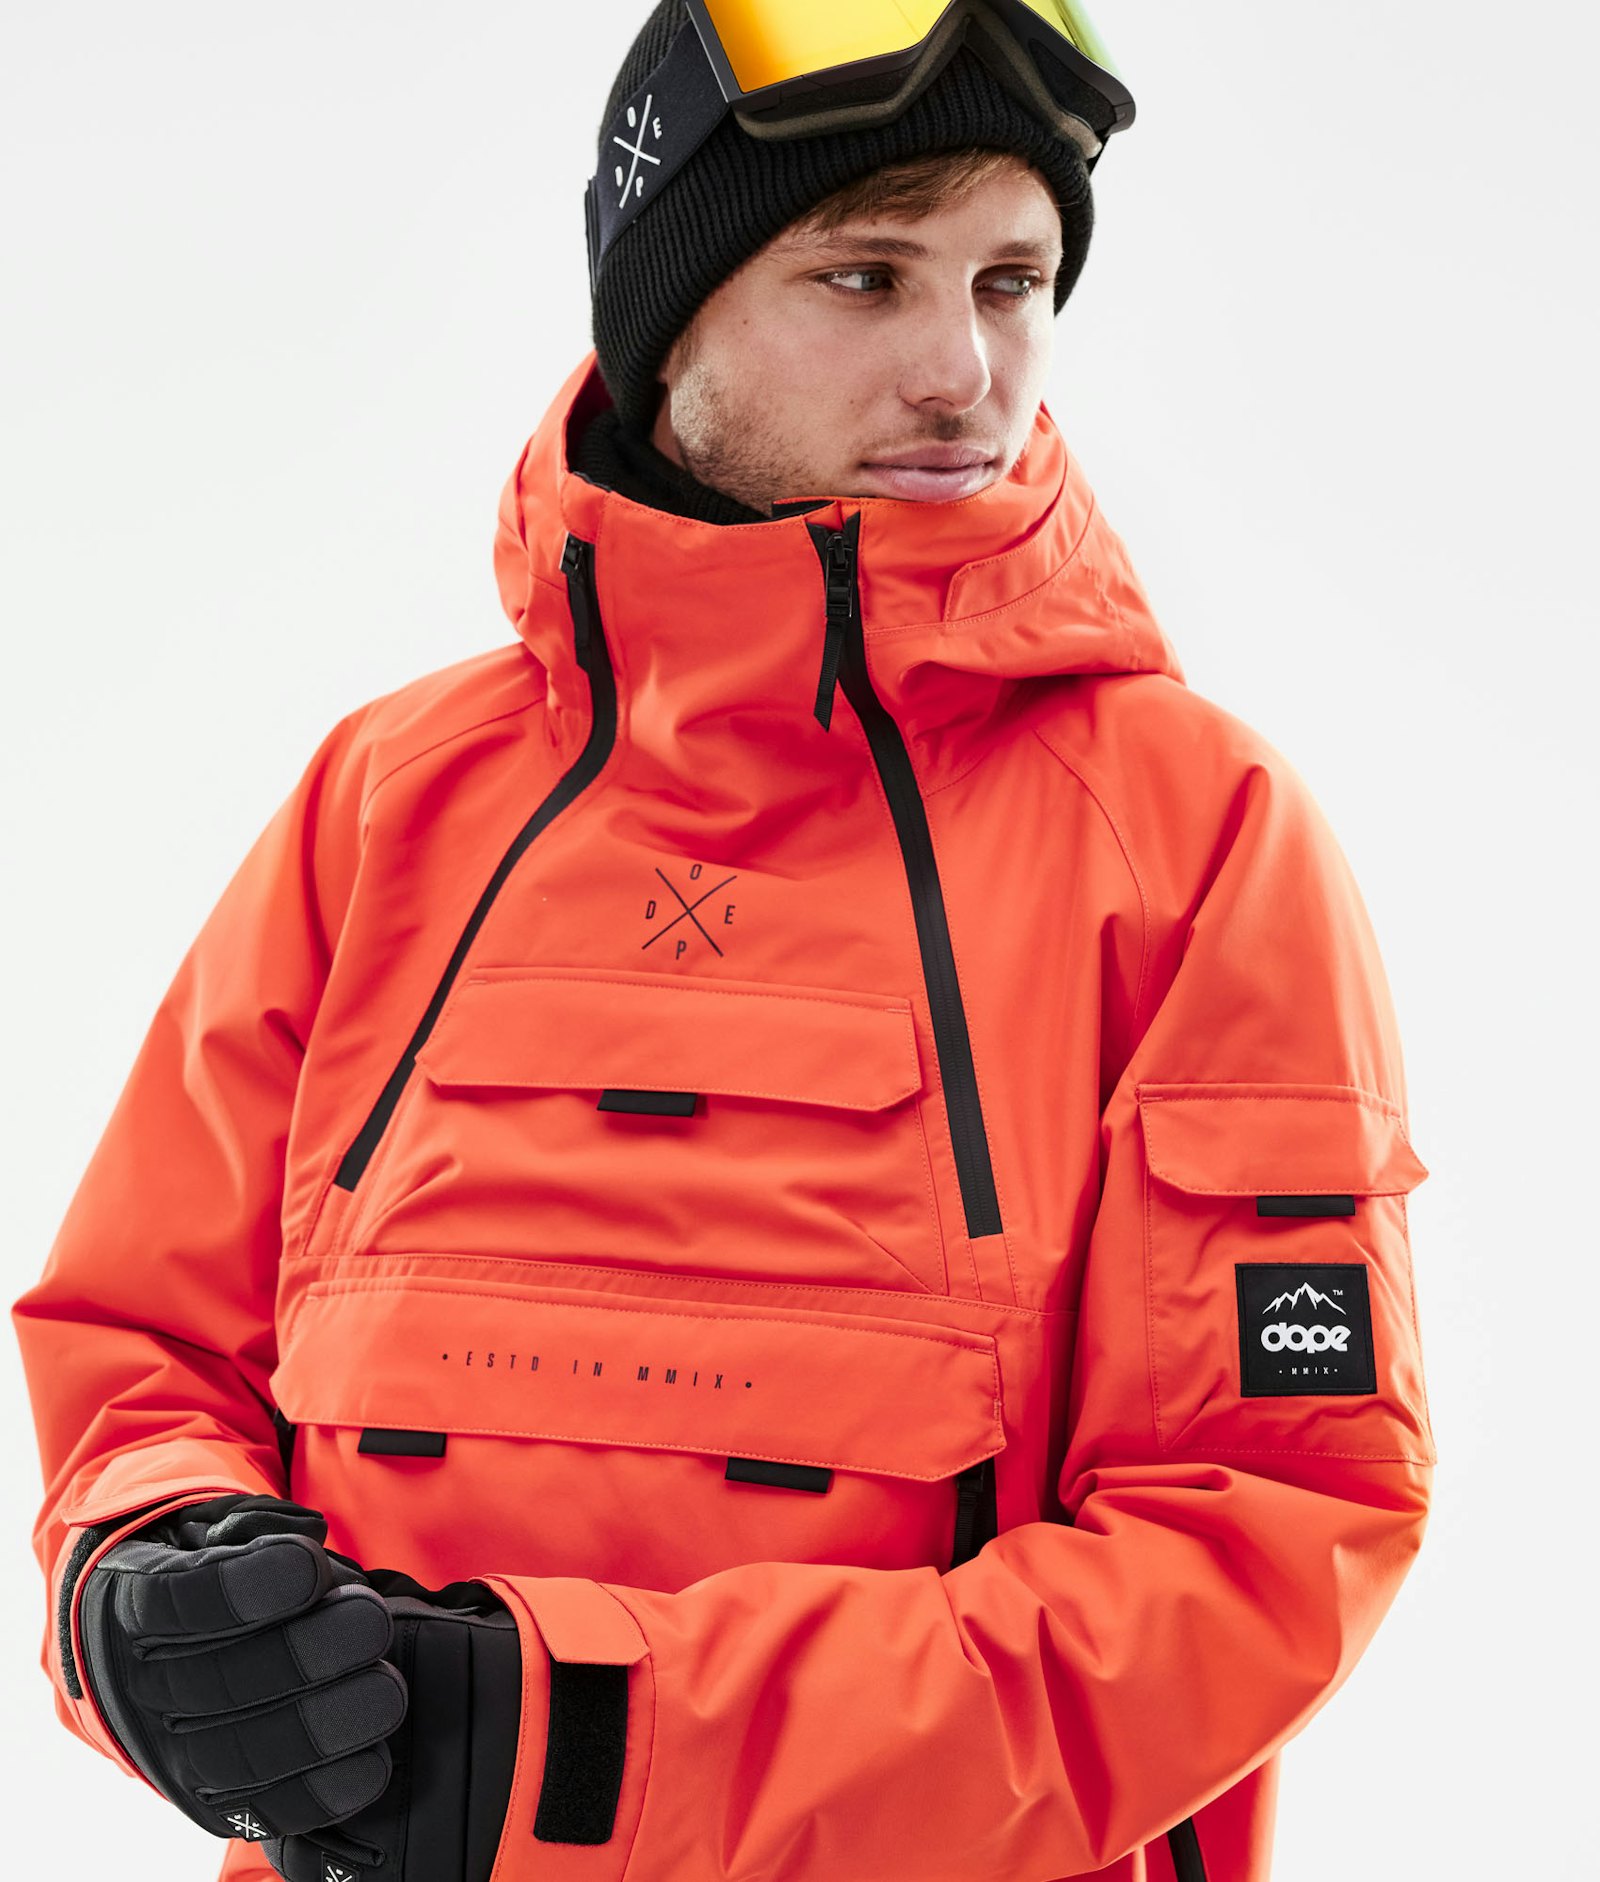 Akin 2021 Snowboard Jacket Men Orange Renewed